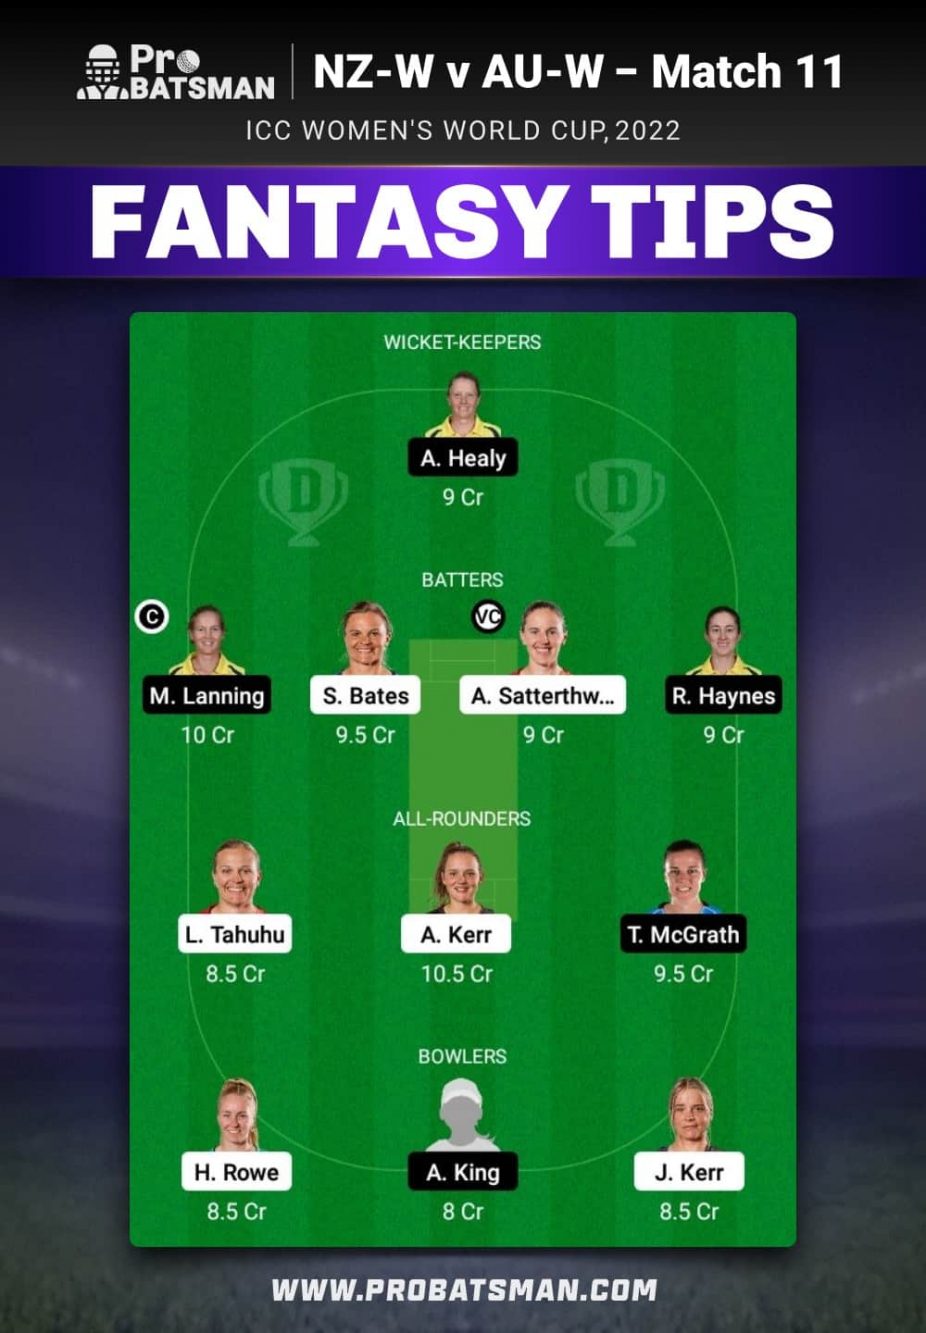 NZ-W vs AU-W Dream11 Fantasy Team Prediction